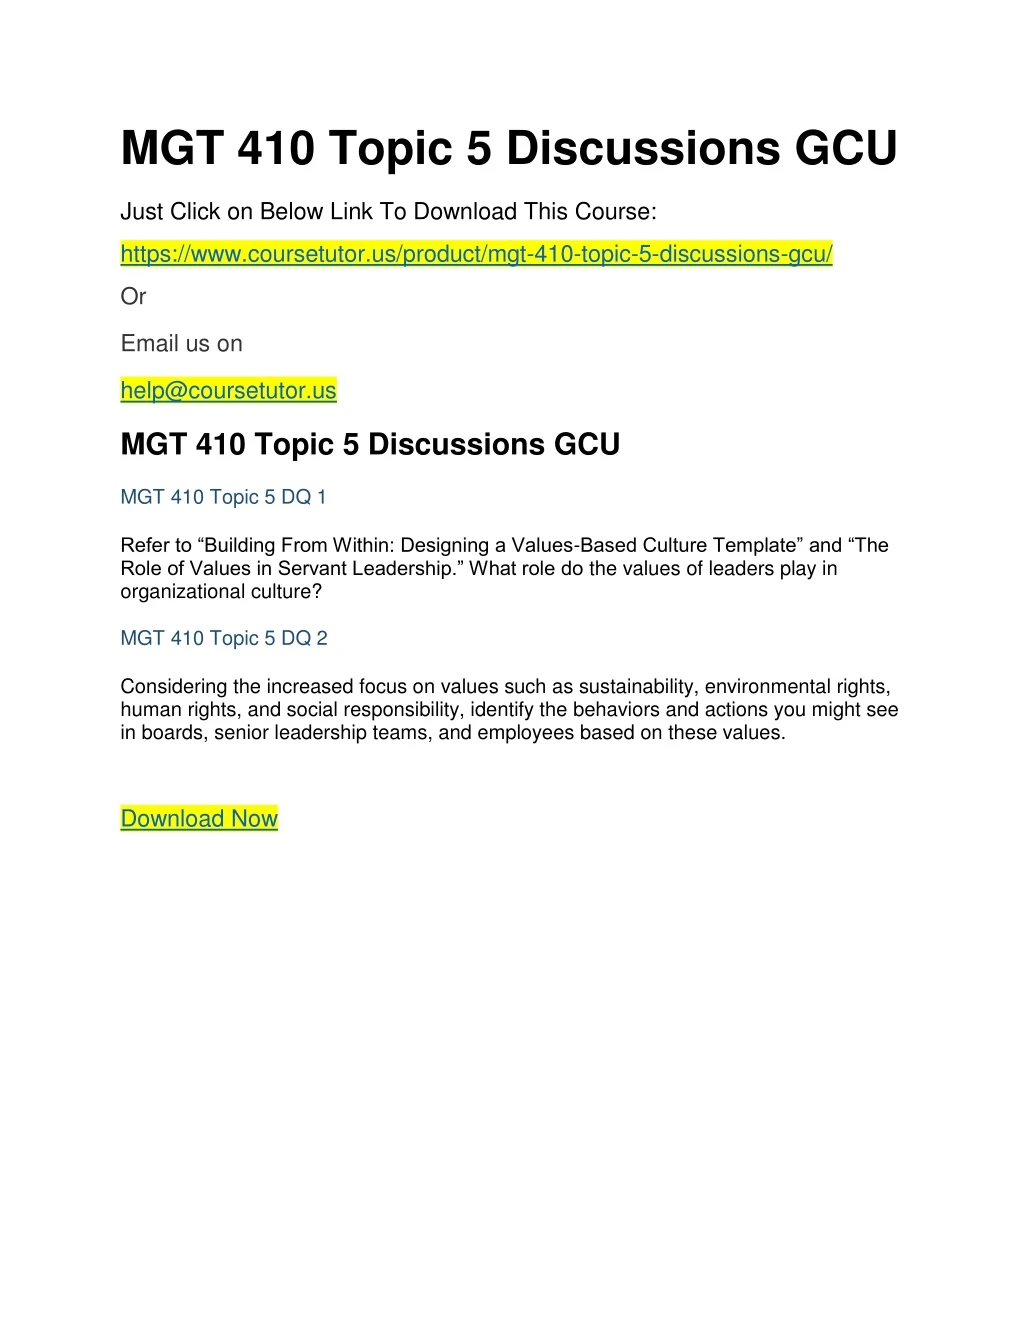 mgt 410 topic 5 discussions gcu